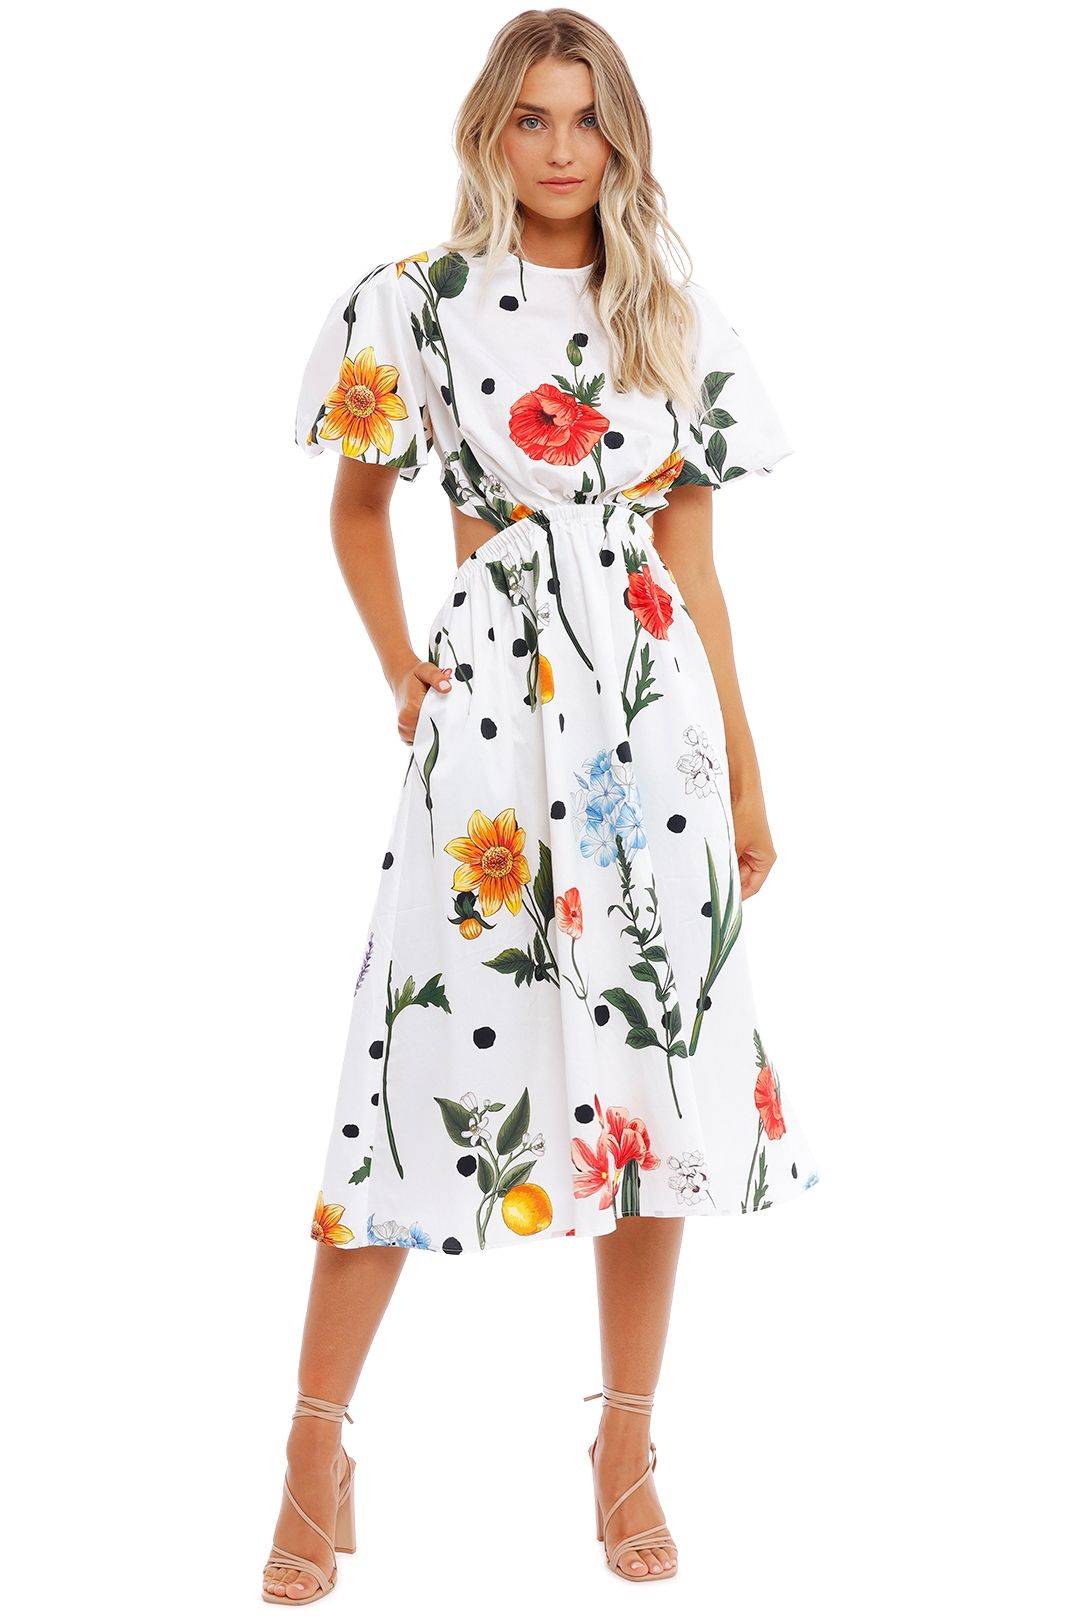 LEO LIN La Flor Dress Multi cutout